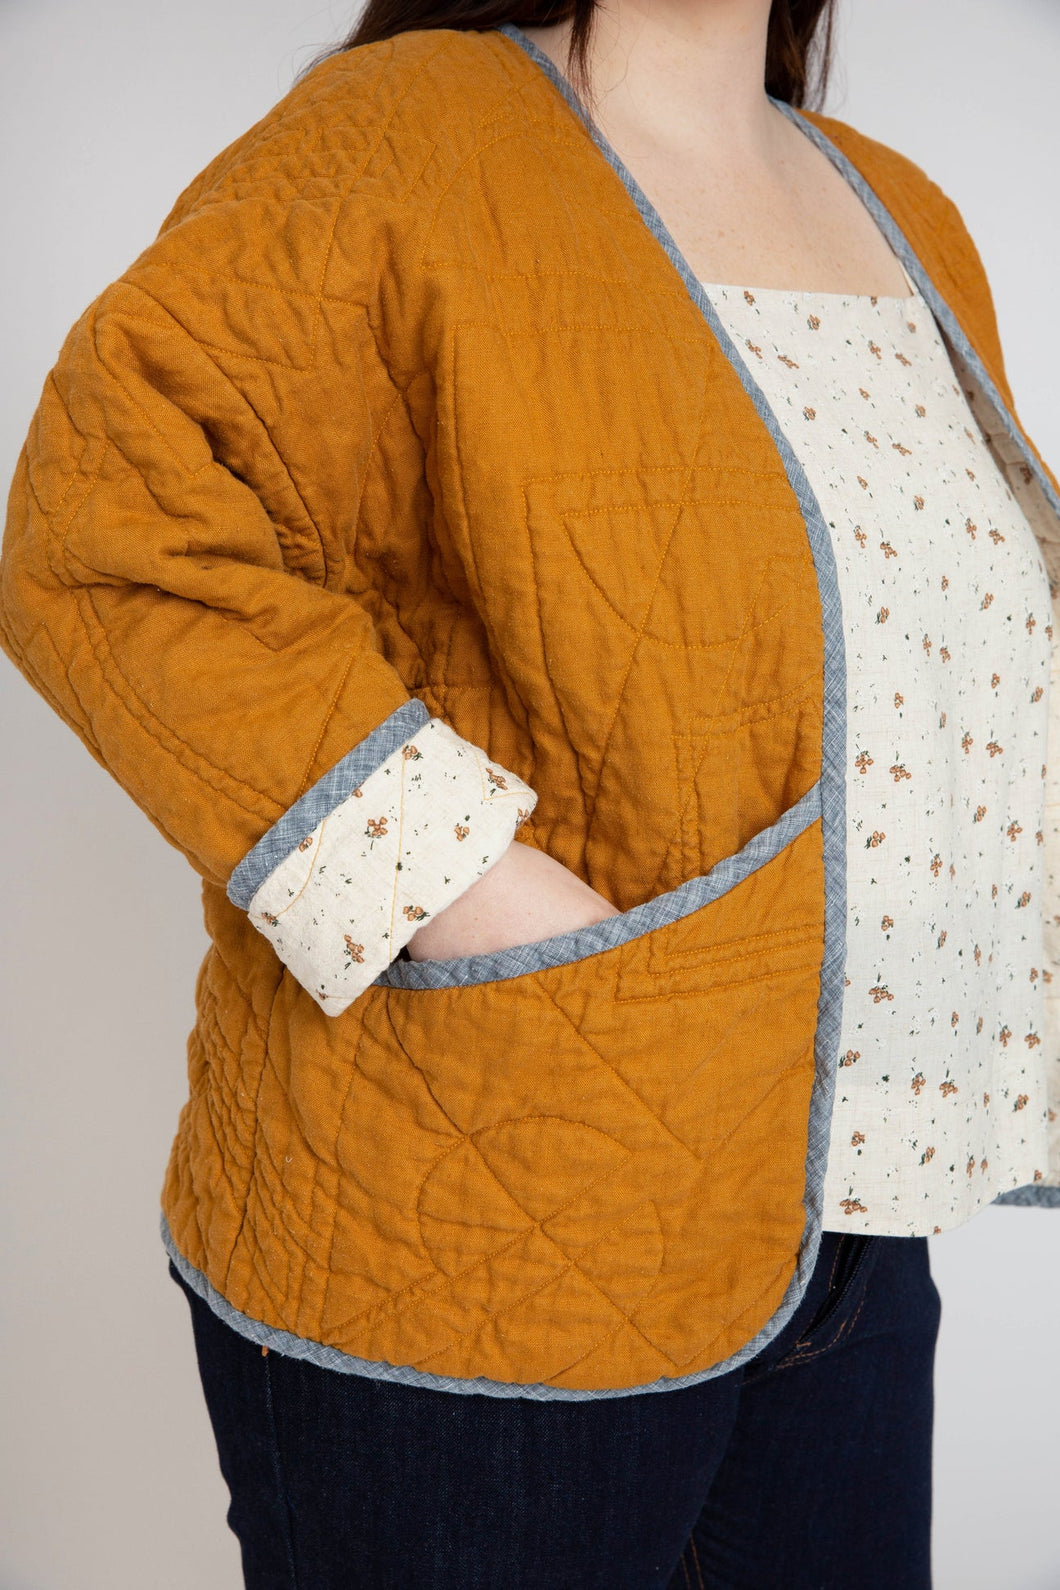 Megan Nielsen Hovea Quilt Coat – UsefulBox Sewing School